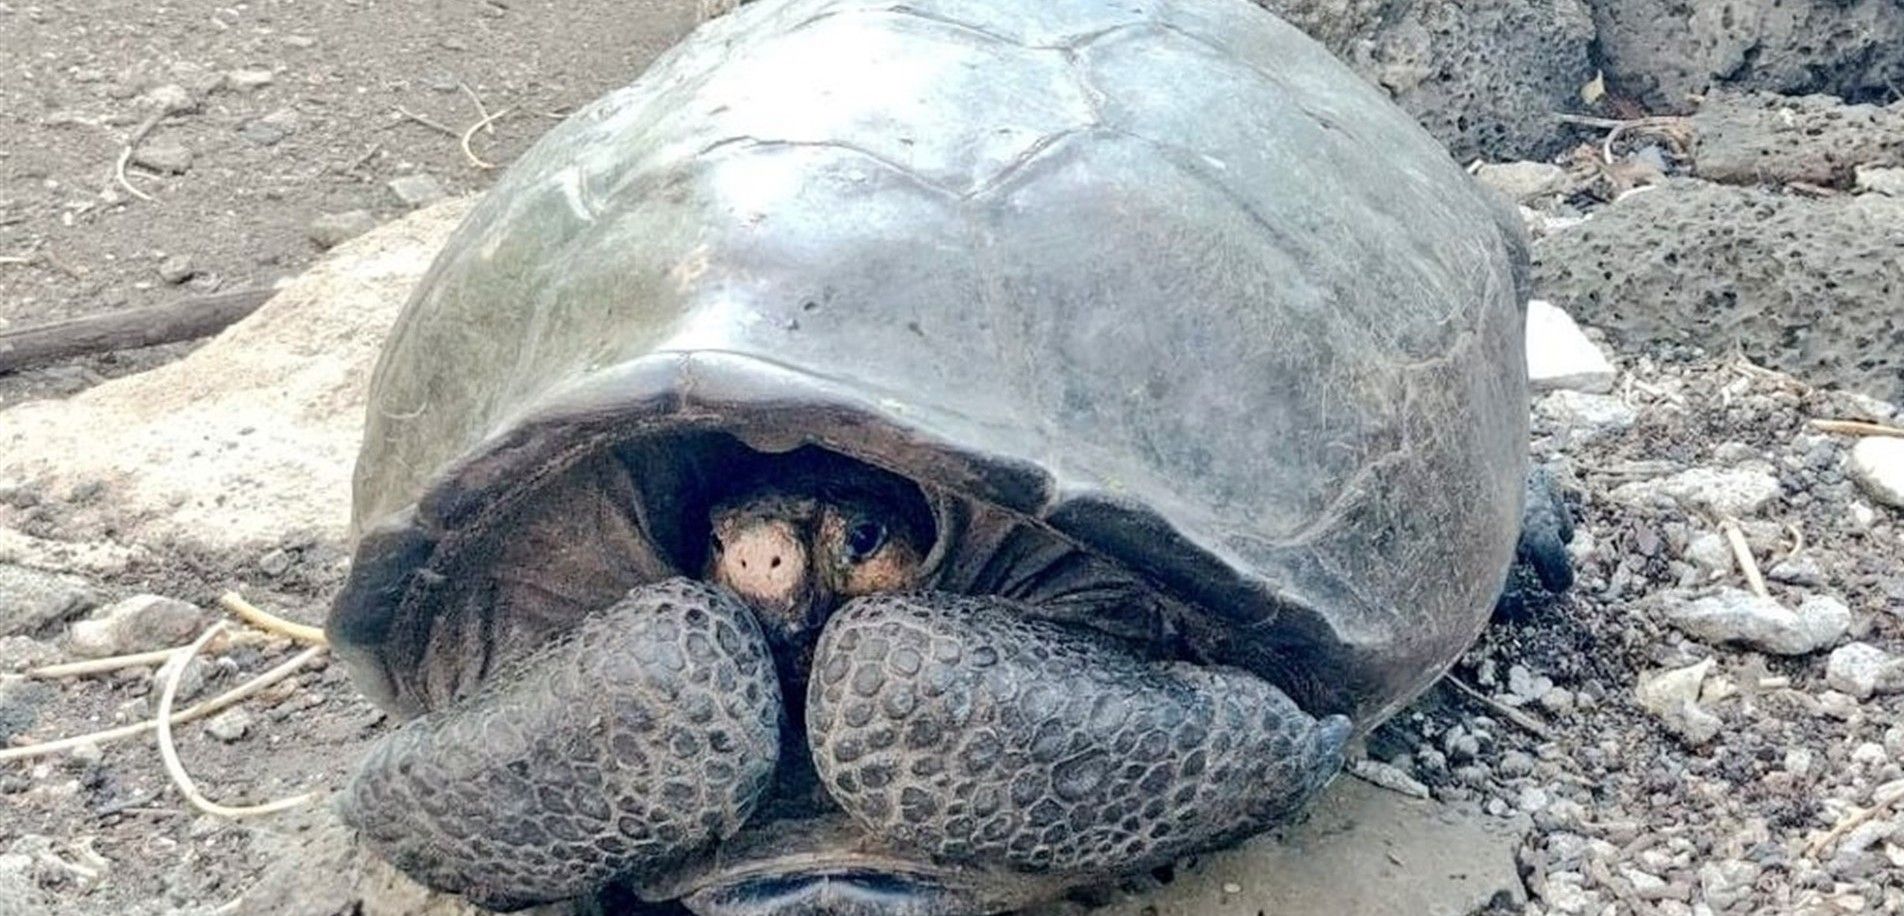 Ejemplar de Chelonoidis phantasticus, la tortuga descubierta / Foto: Ministerio de Medio Ambiente de Ecuador